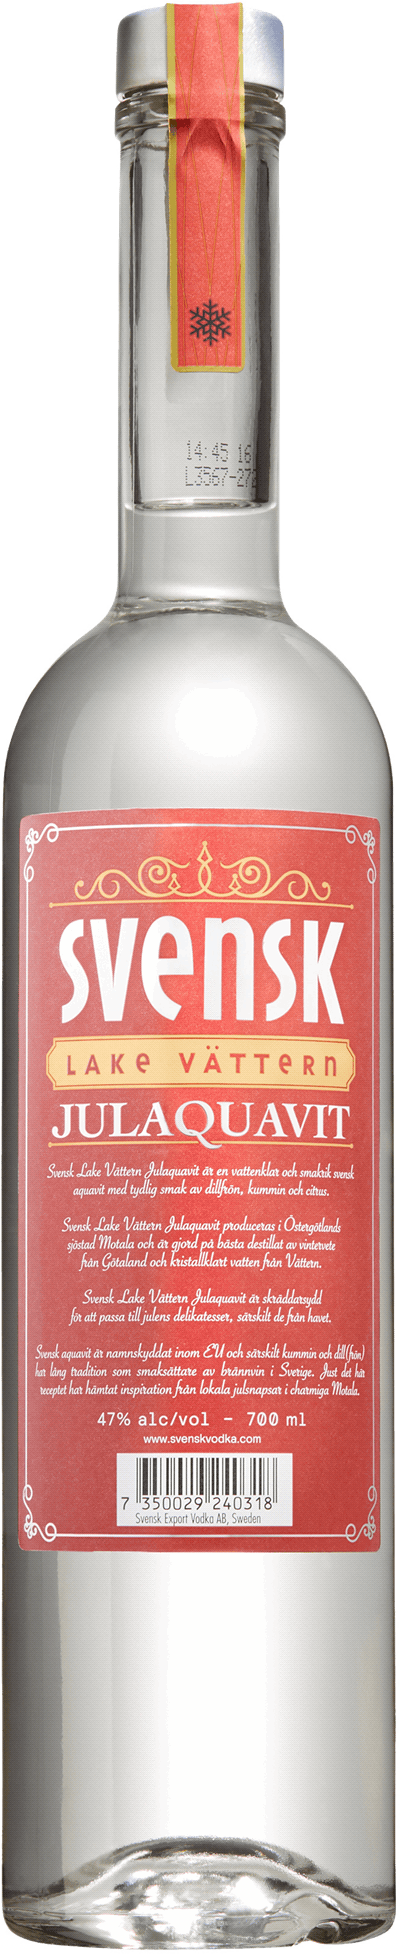 Svensk Lake Vättern Julaquavit 